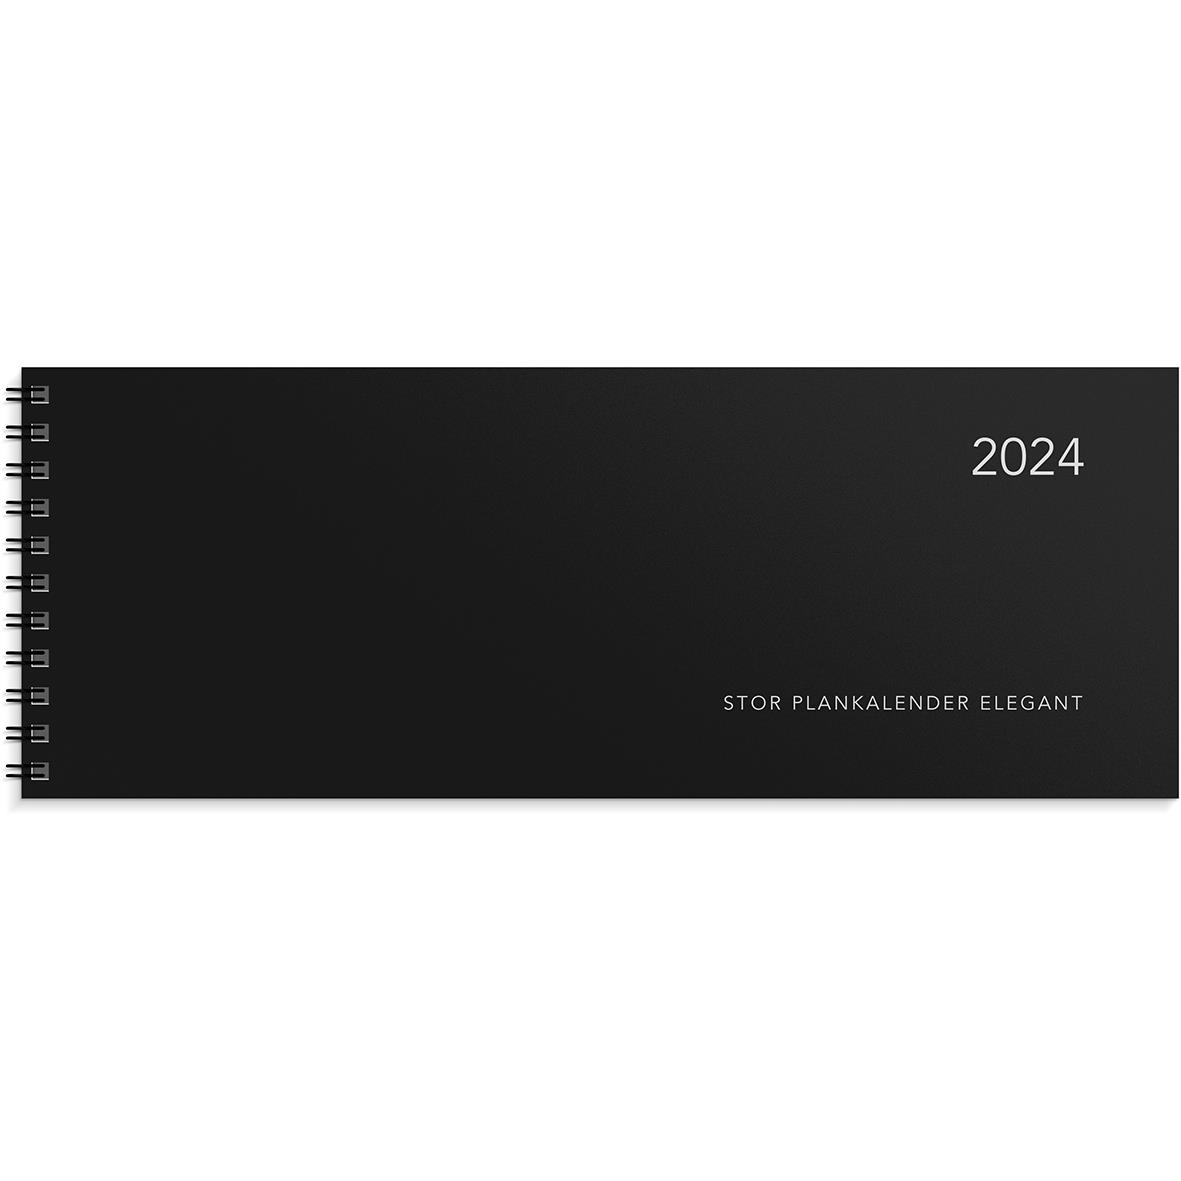 Almanacka Burde 1352 Stor Plankalender Elegant 2022 16030166_1